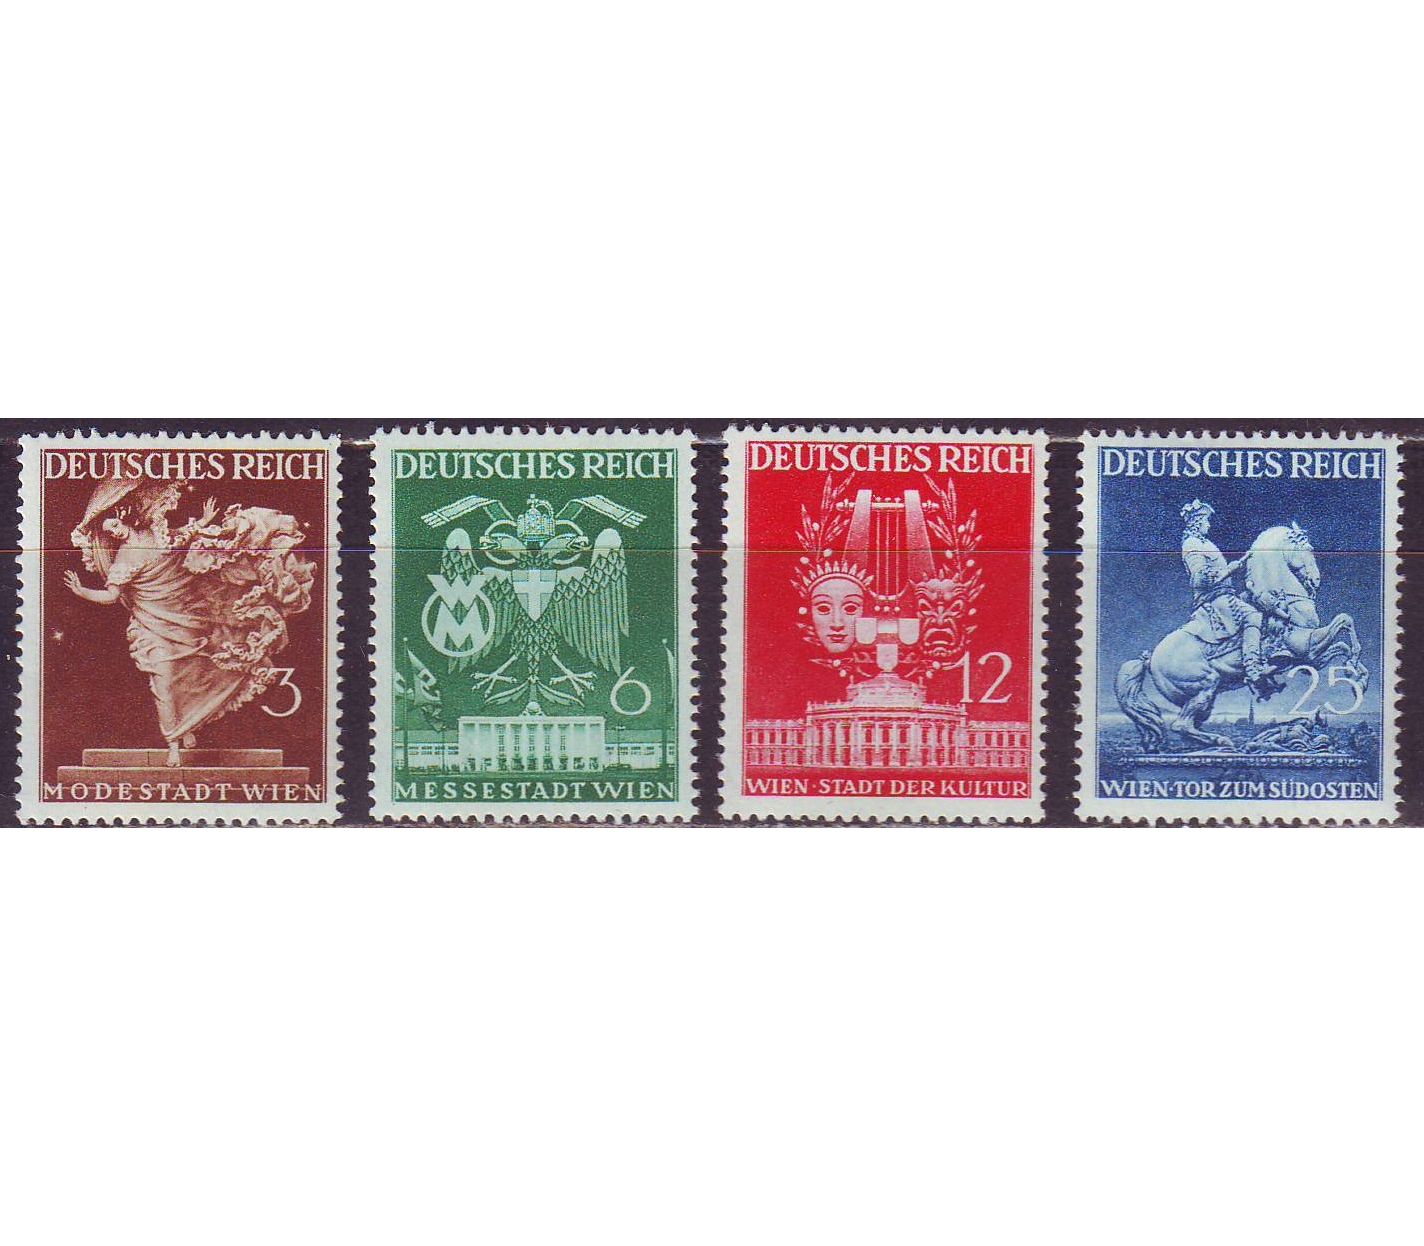 Купить марки германии. Немецкие почтовые марки третьего рейха. Марка Рейх Почтовая Дойч Messestadt Wien. Почтовые марки Германия, третий Рейх 1942 день почтовой марки. Бундес марки 3 рейха.